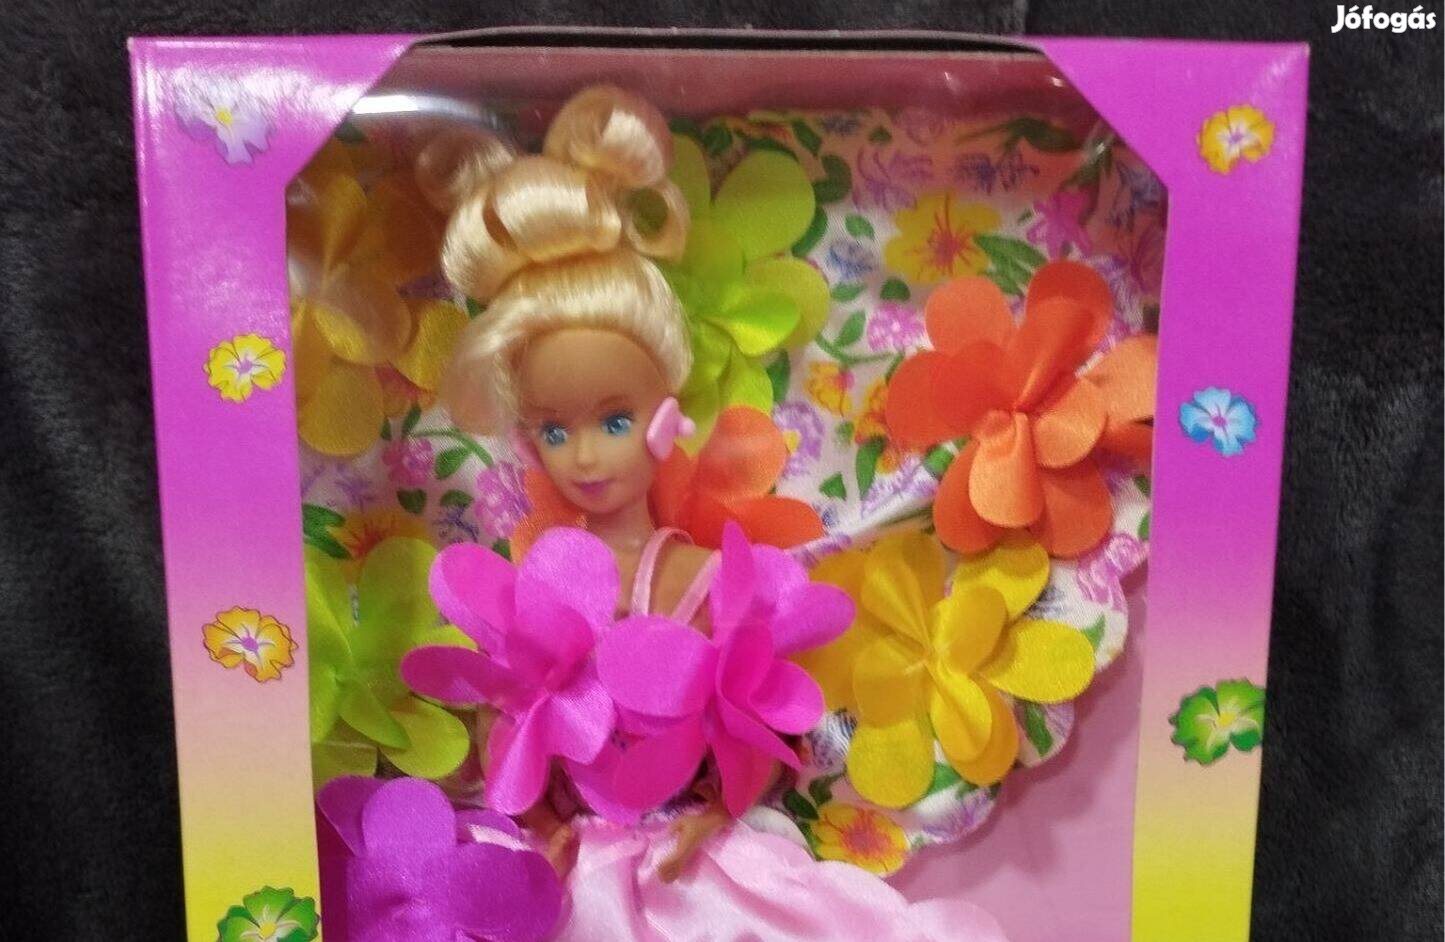 Lisa Princess baba (Barbie méret)új, bontatlan csomagolásban megőrzött